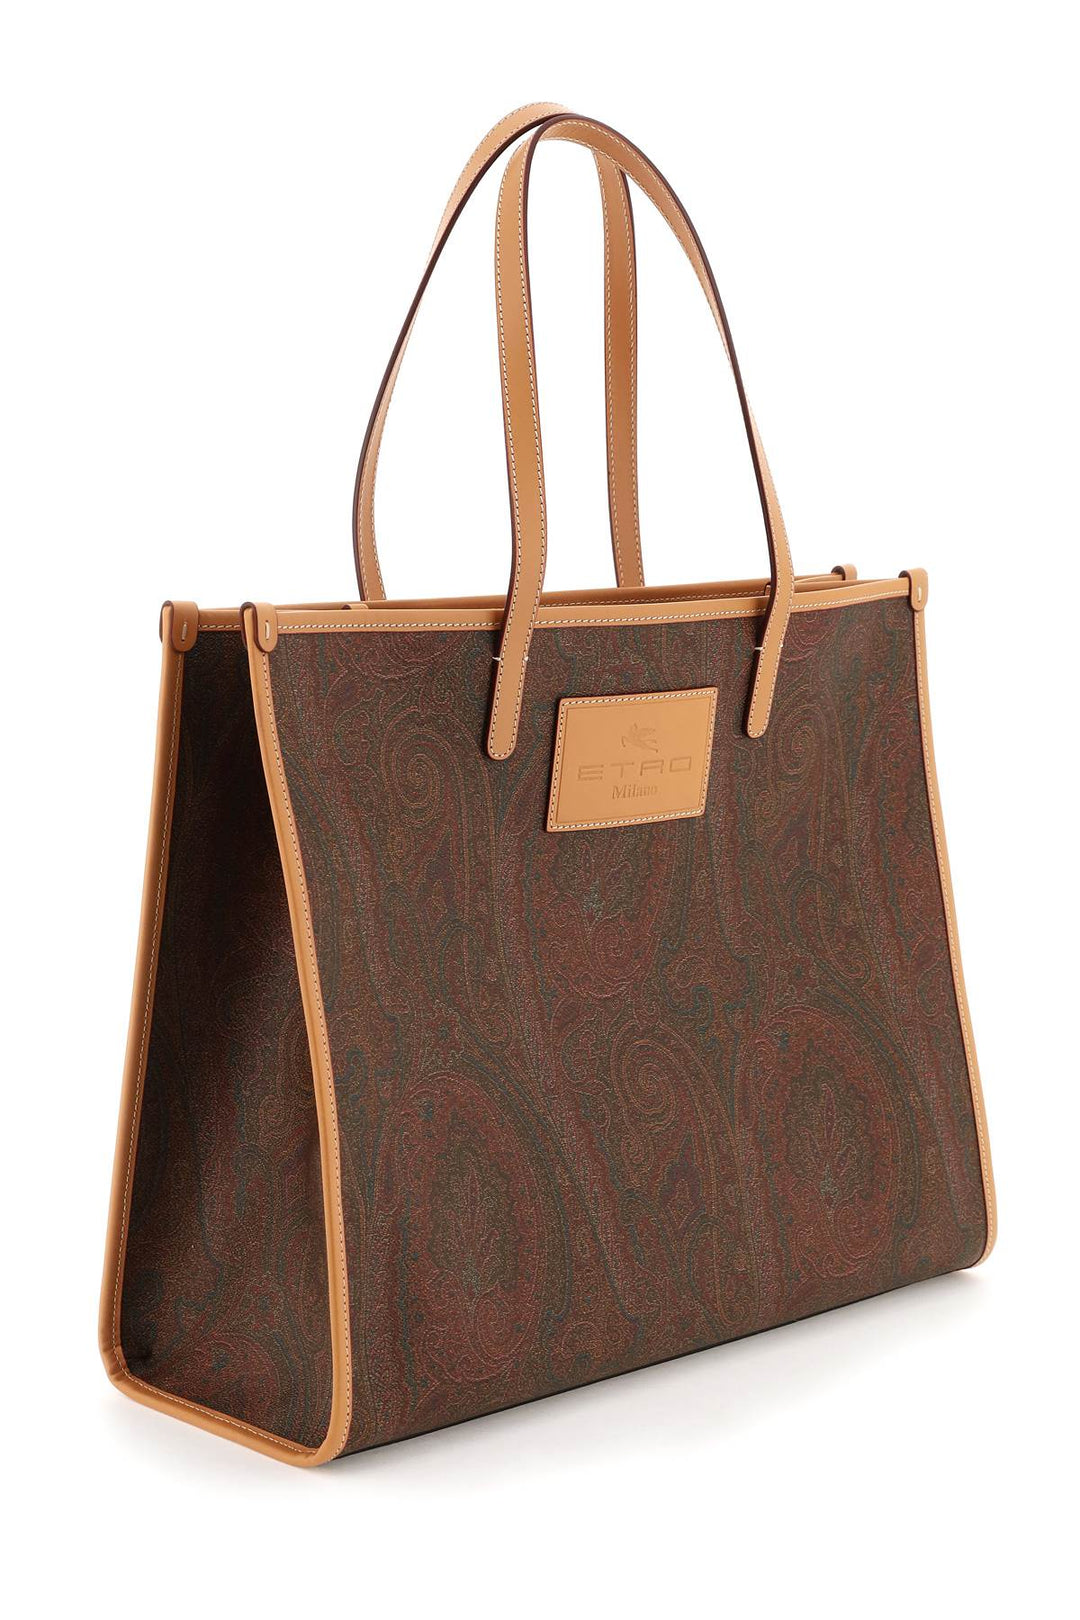 Shopping Bag Grande Paisley - Etro - Donna